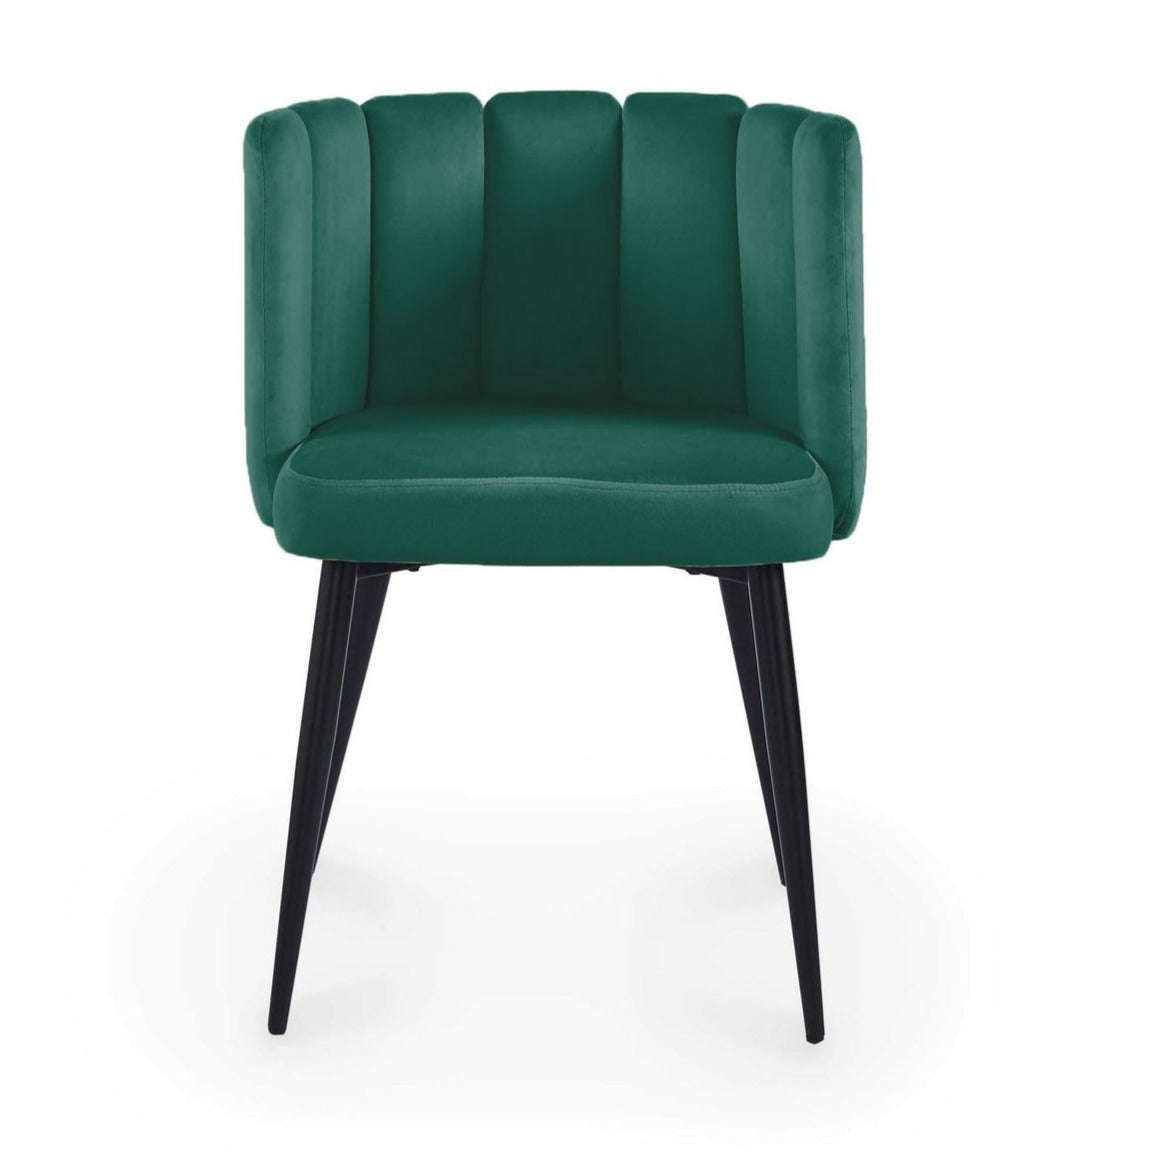 1_2304193836-lot-de-2-chaises-design-en-velours-vert-debby.jpg